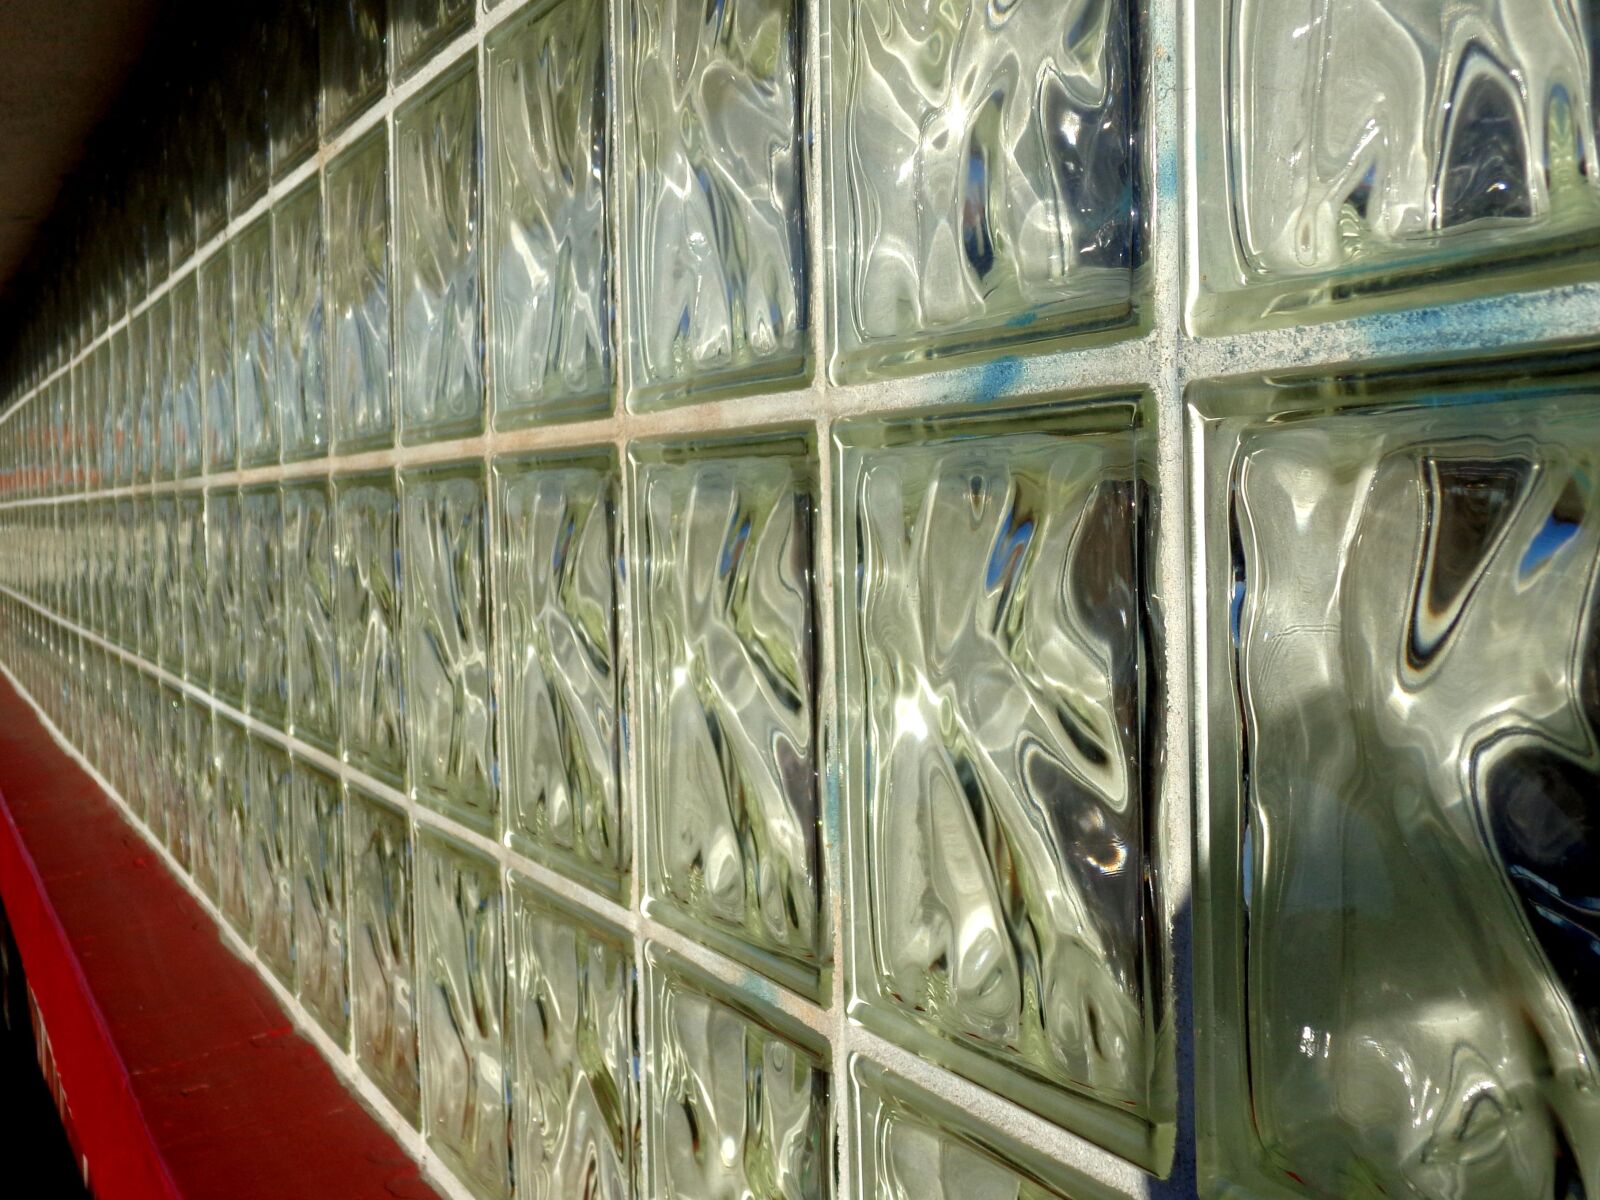 Sony DSC-W690 sample photo. "Wall, glass, brick window" photography